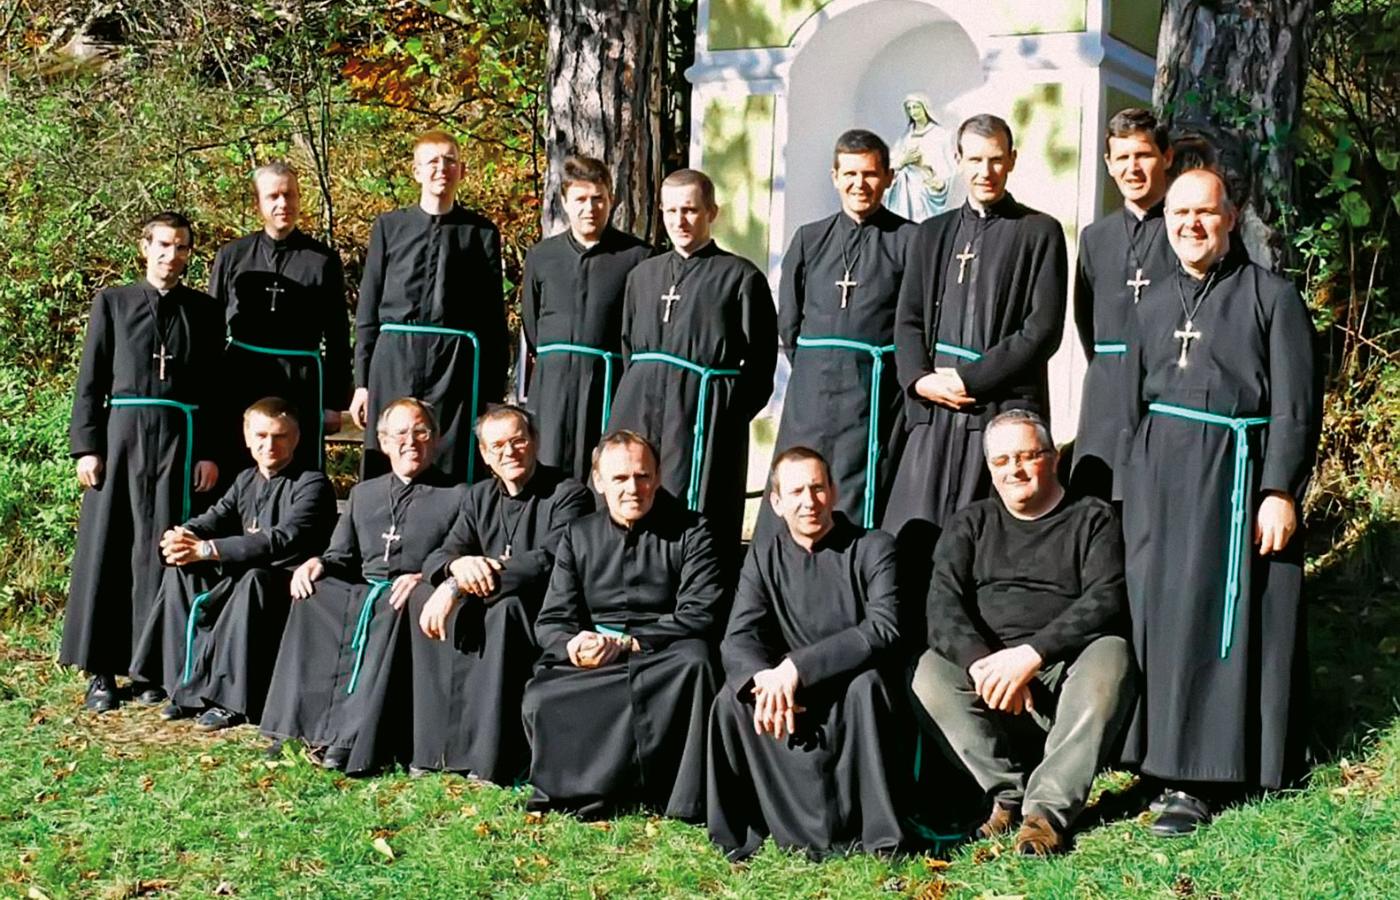 Grupa samarytan w charakterystycznych habitach z zielonymi sznurami wkrótce po założeniu zgromadzenia, Niemcy, początek lat 80.